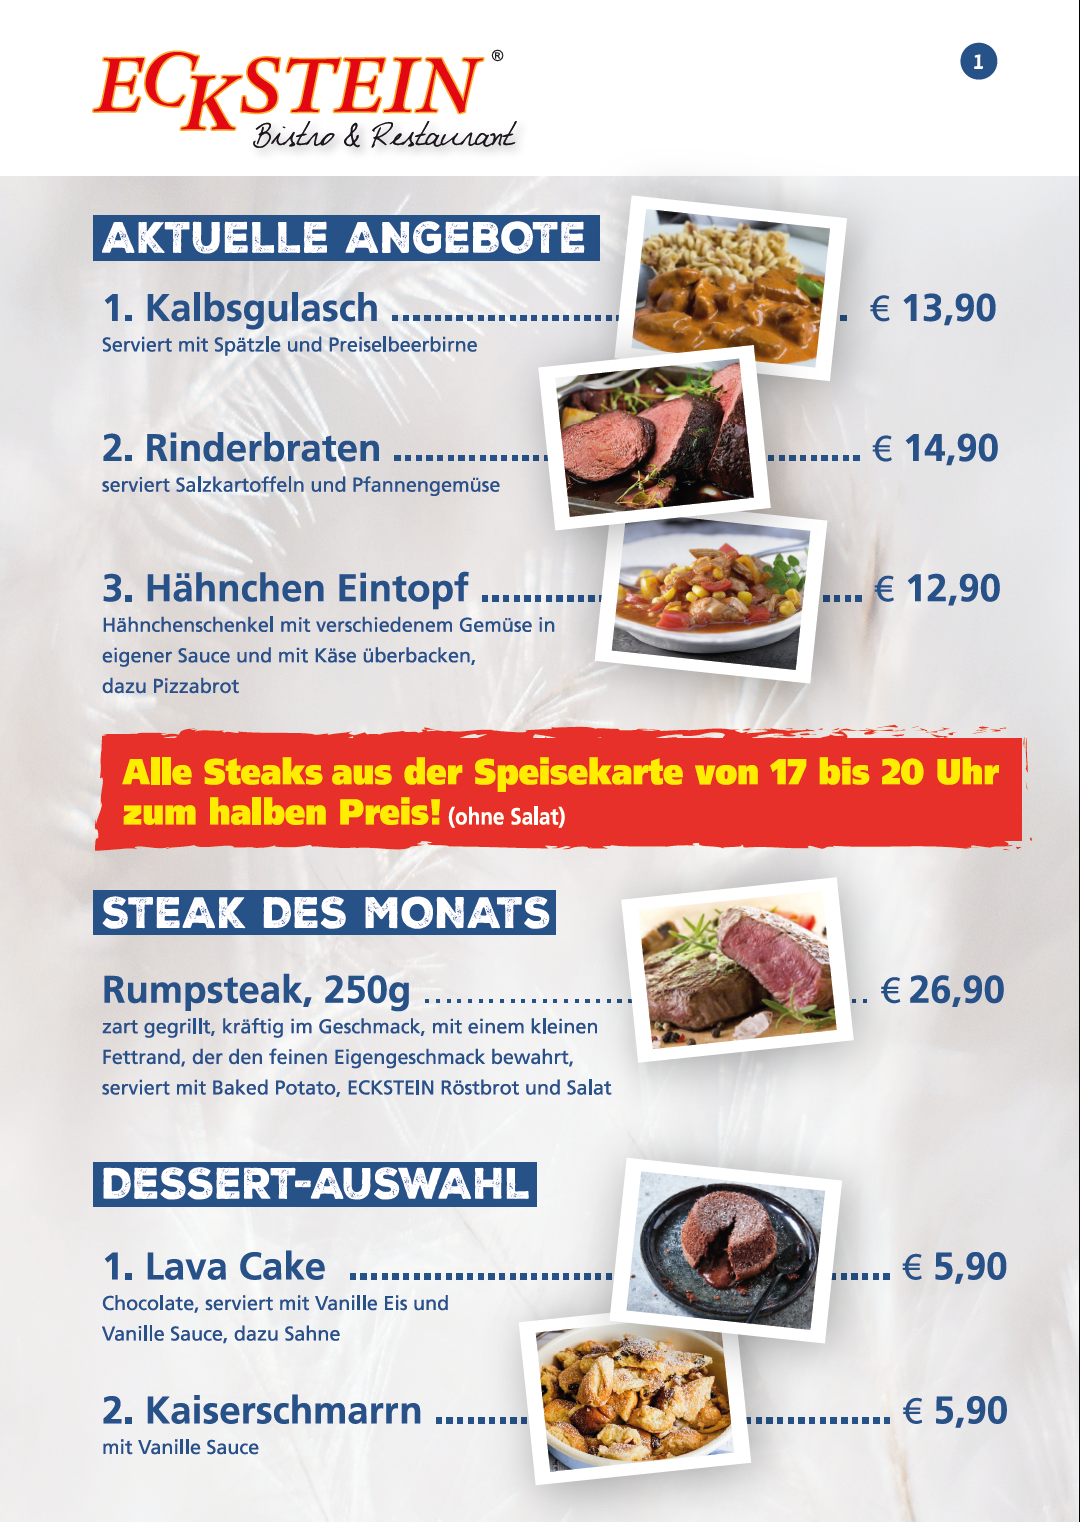 Eckstein-Restaurant-Eimsbüttel-Burger-Steaks-Fisch-Aktion-1